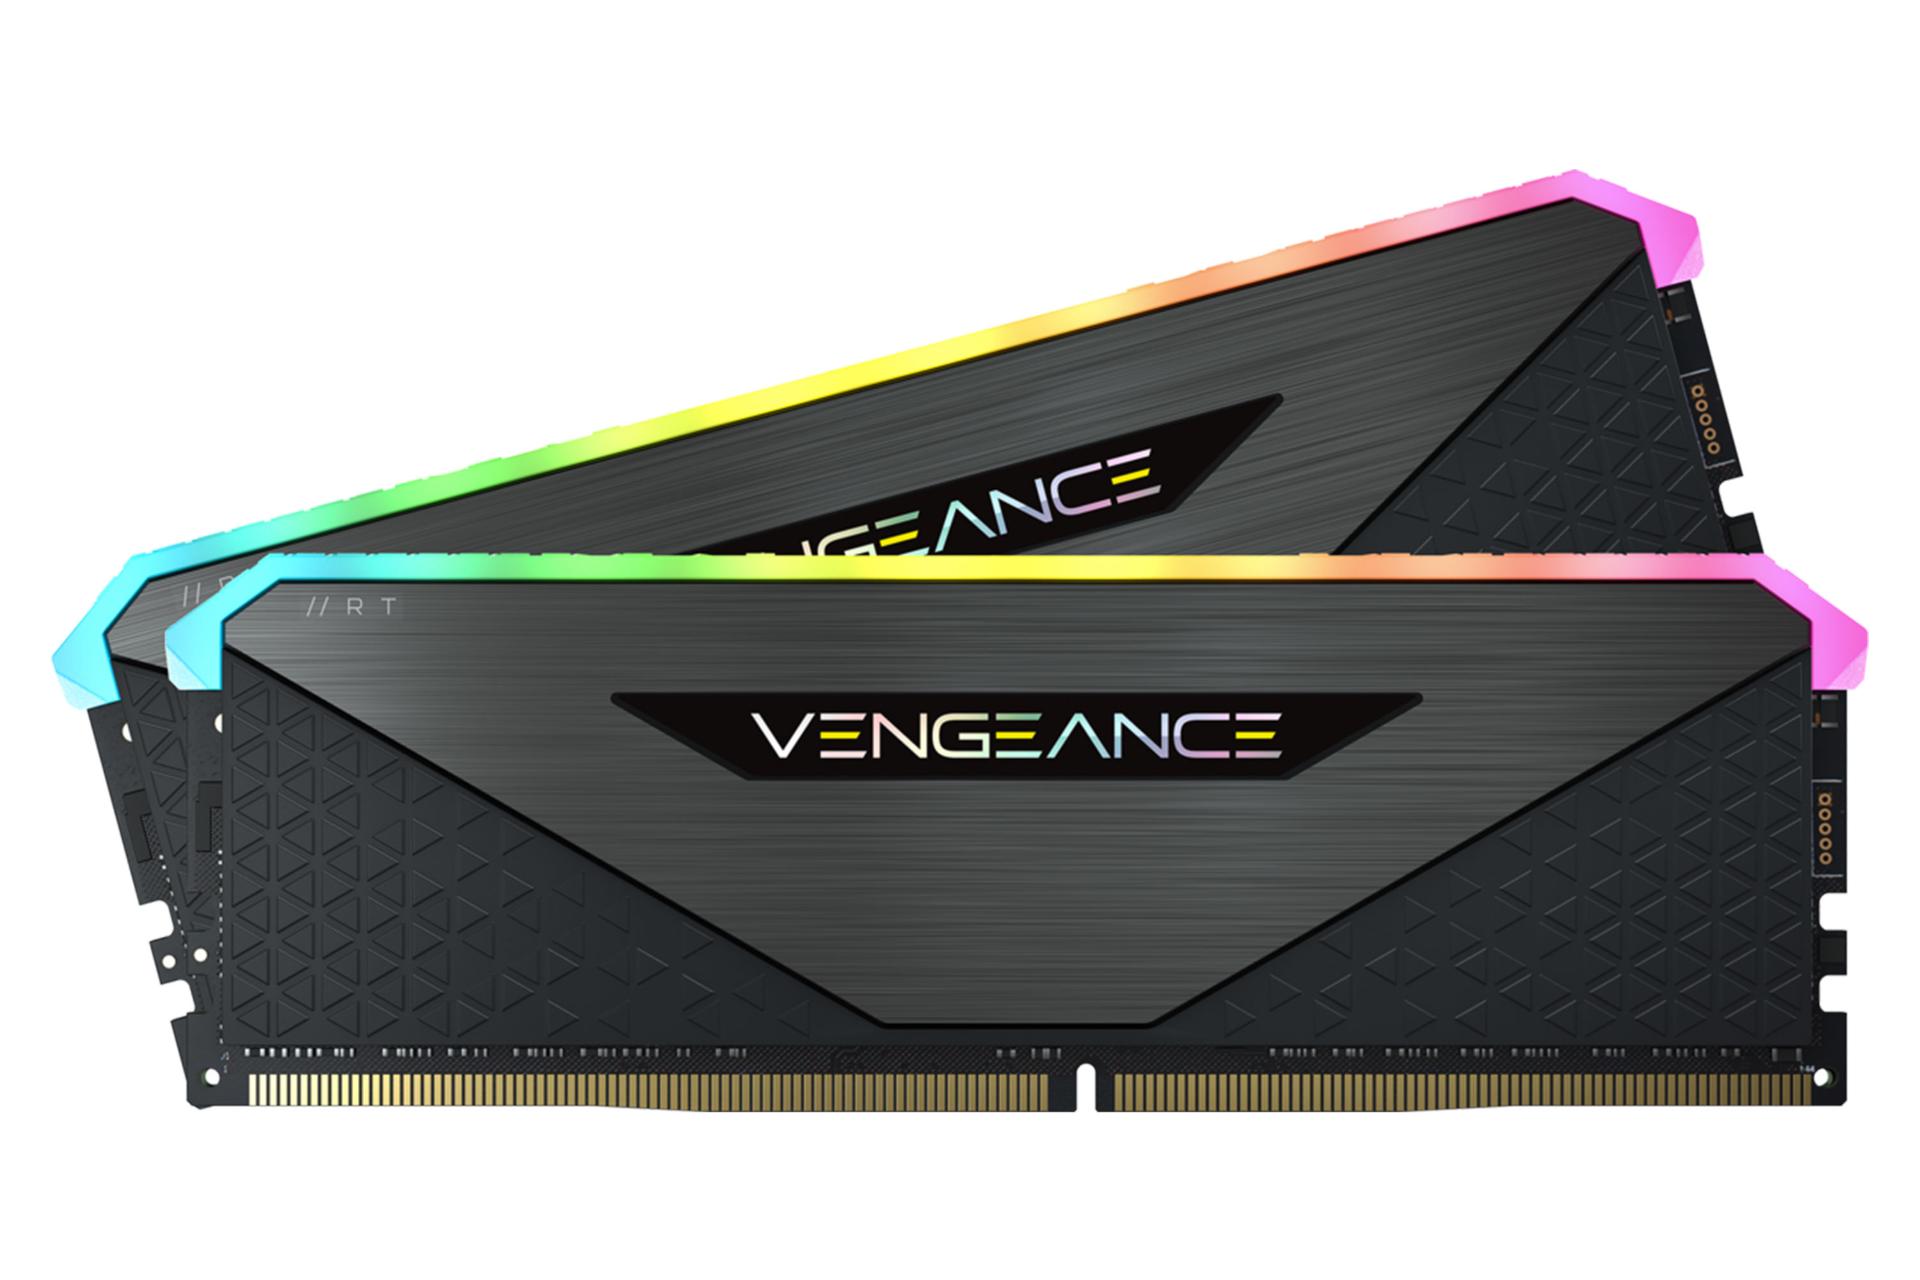  رم کورسیر VENGEANCE RGB RT ظرفیت 16 گیگابایت (2x8) از نوع DDR4-3600